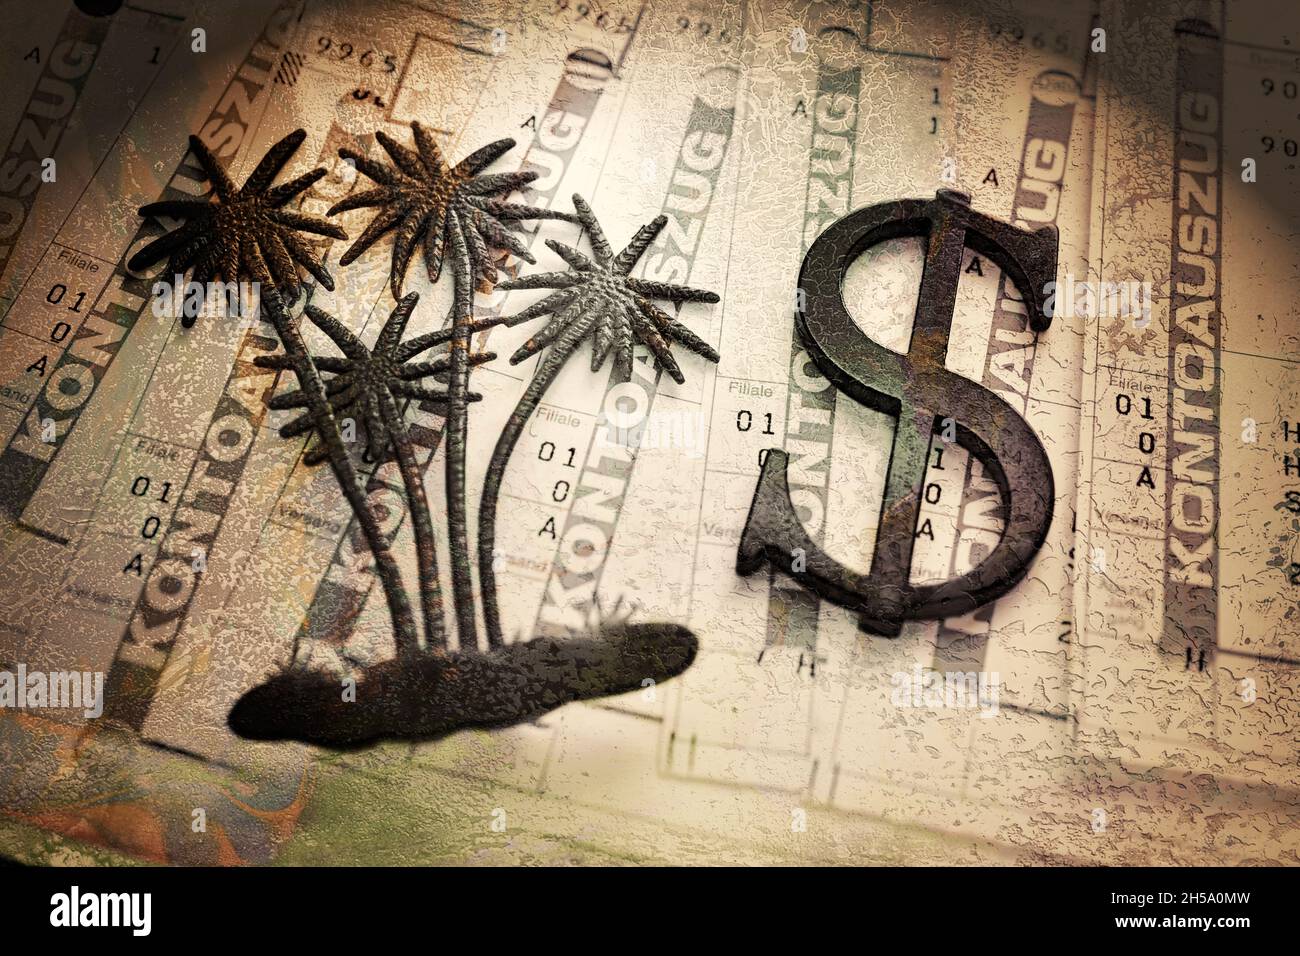 Palme und Dollarzeichen auf Kontoauszügen, Symbolfoto Pandora Papers Steuerskandal Stock Photo